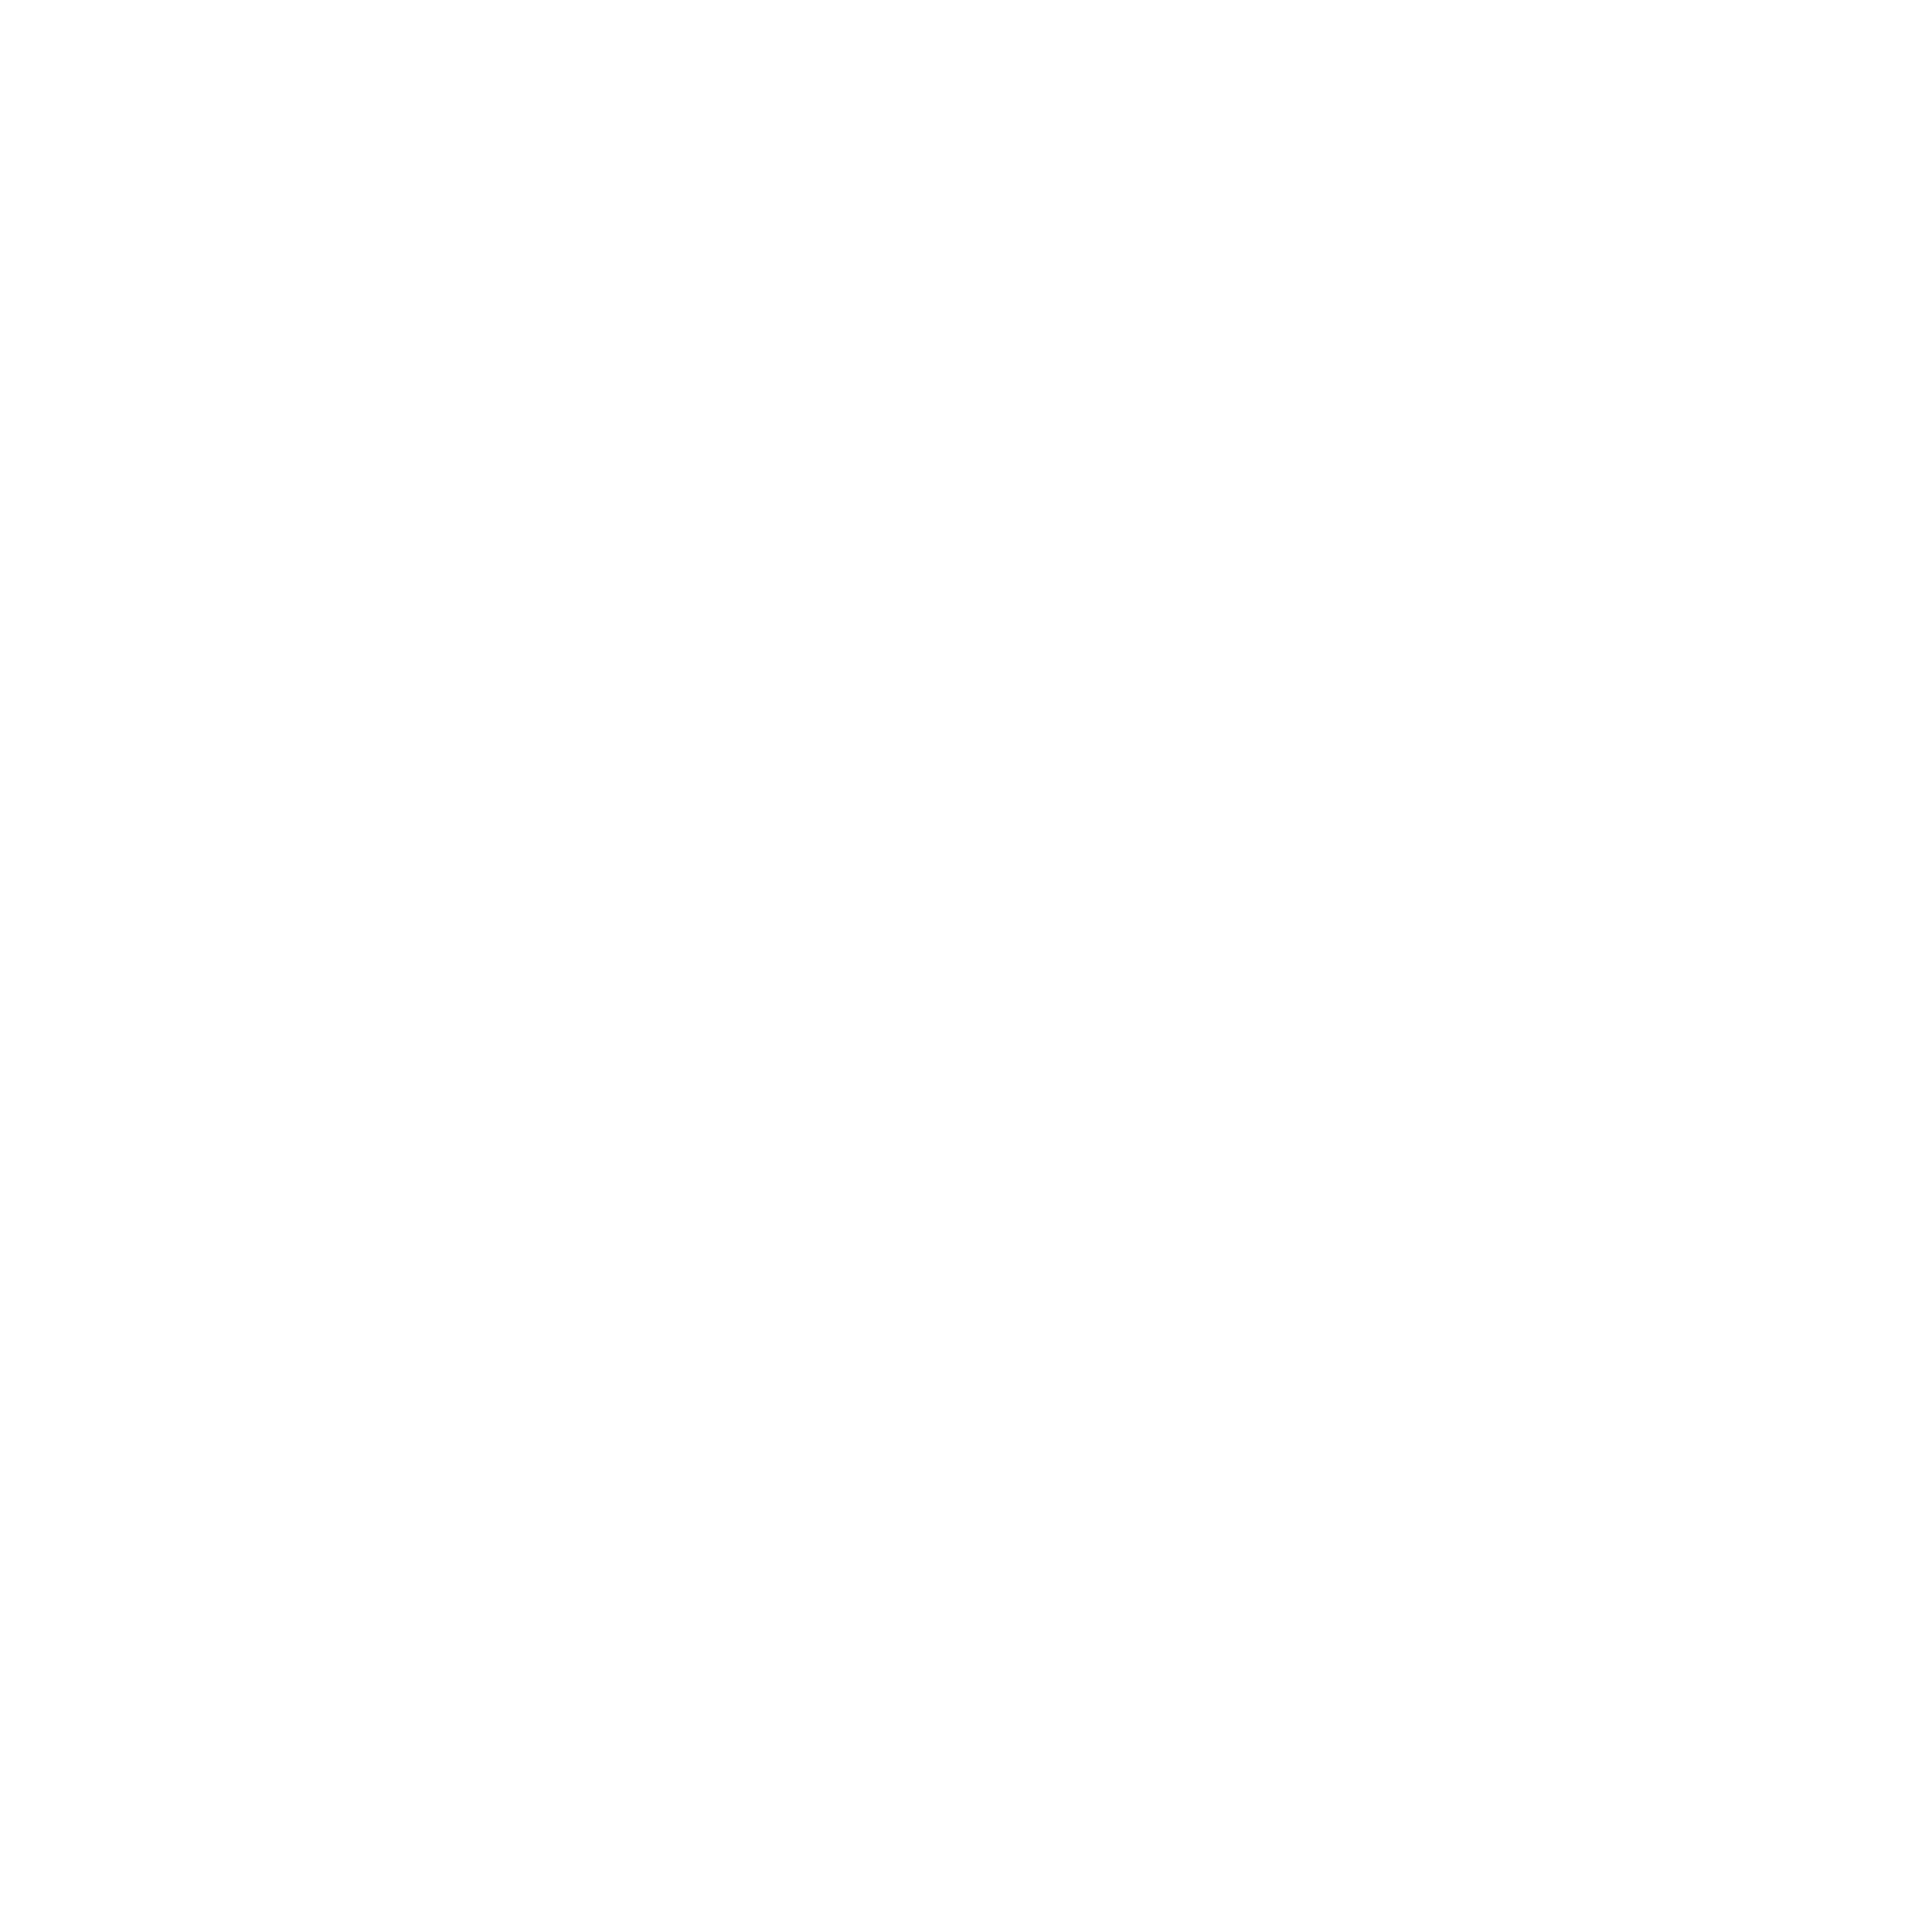 Yumball Studio